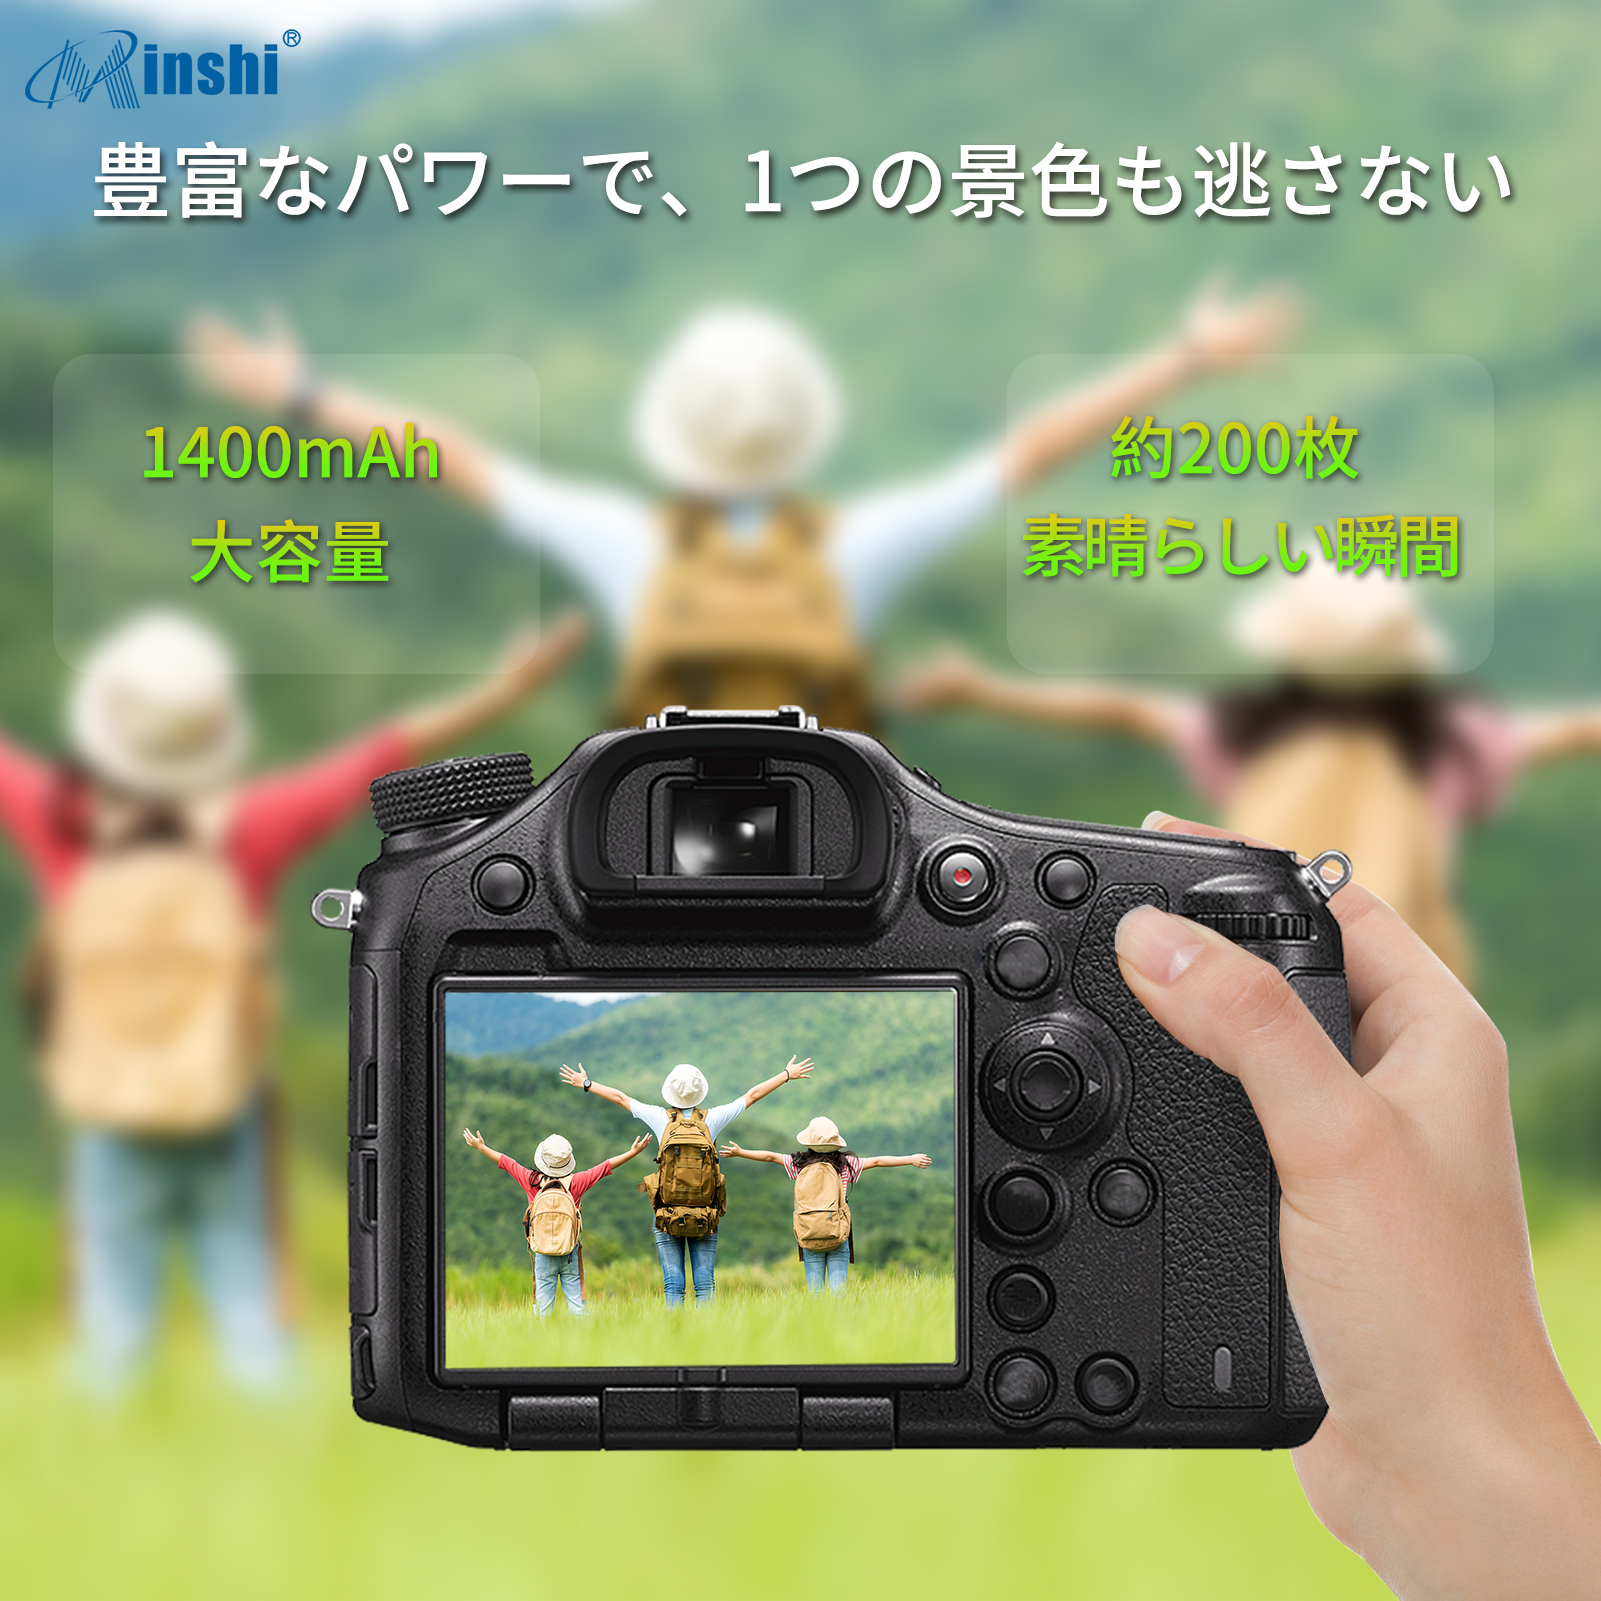 現品Minshi VICTOR GZ-HM670 互換バッテリー PSE認定済 高品質交換用バッテリー 対応 1400mAh カメラアクセサリー 